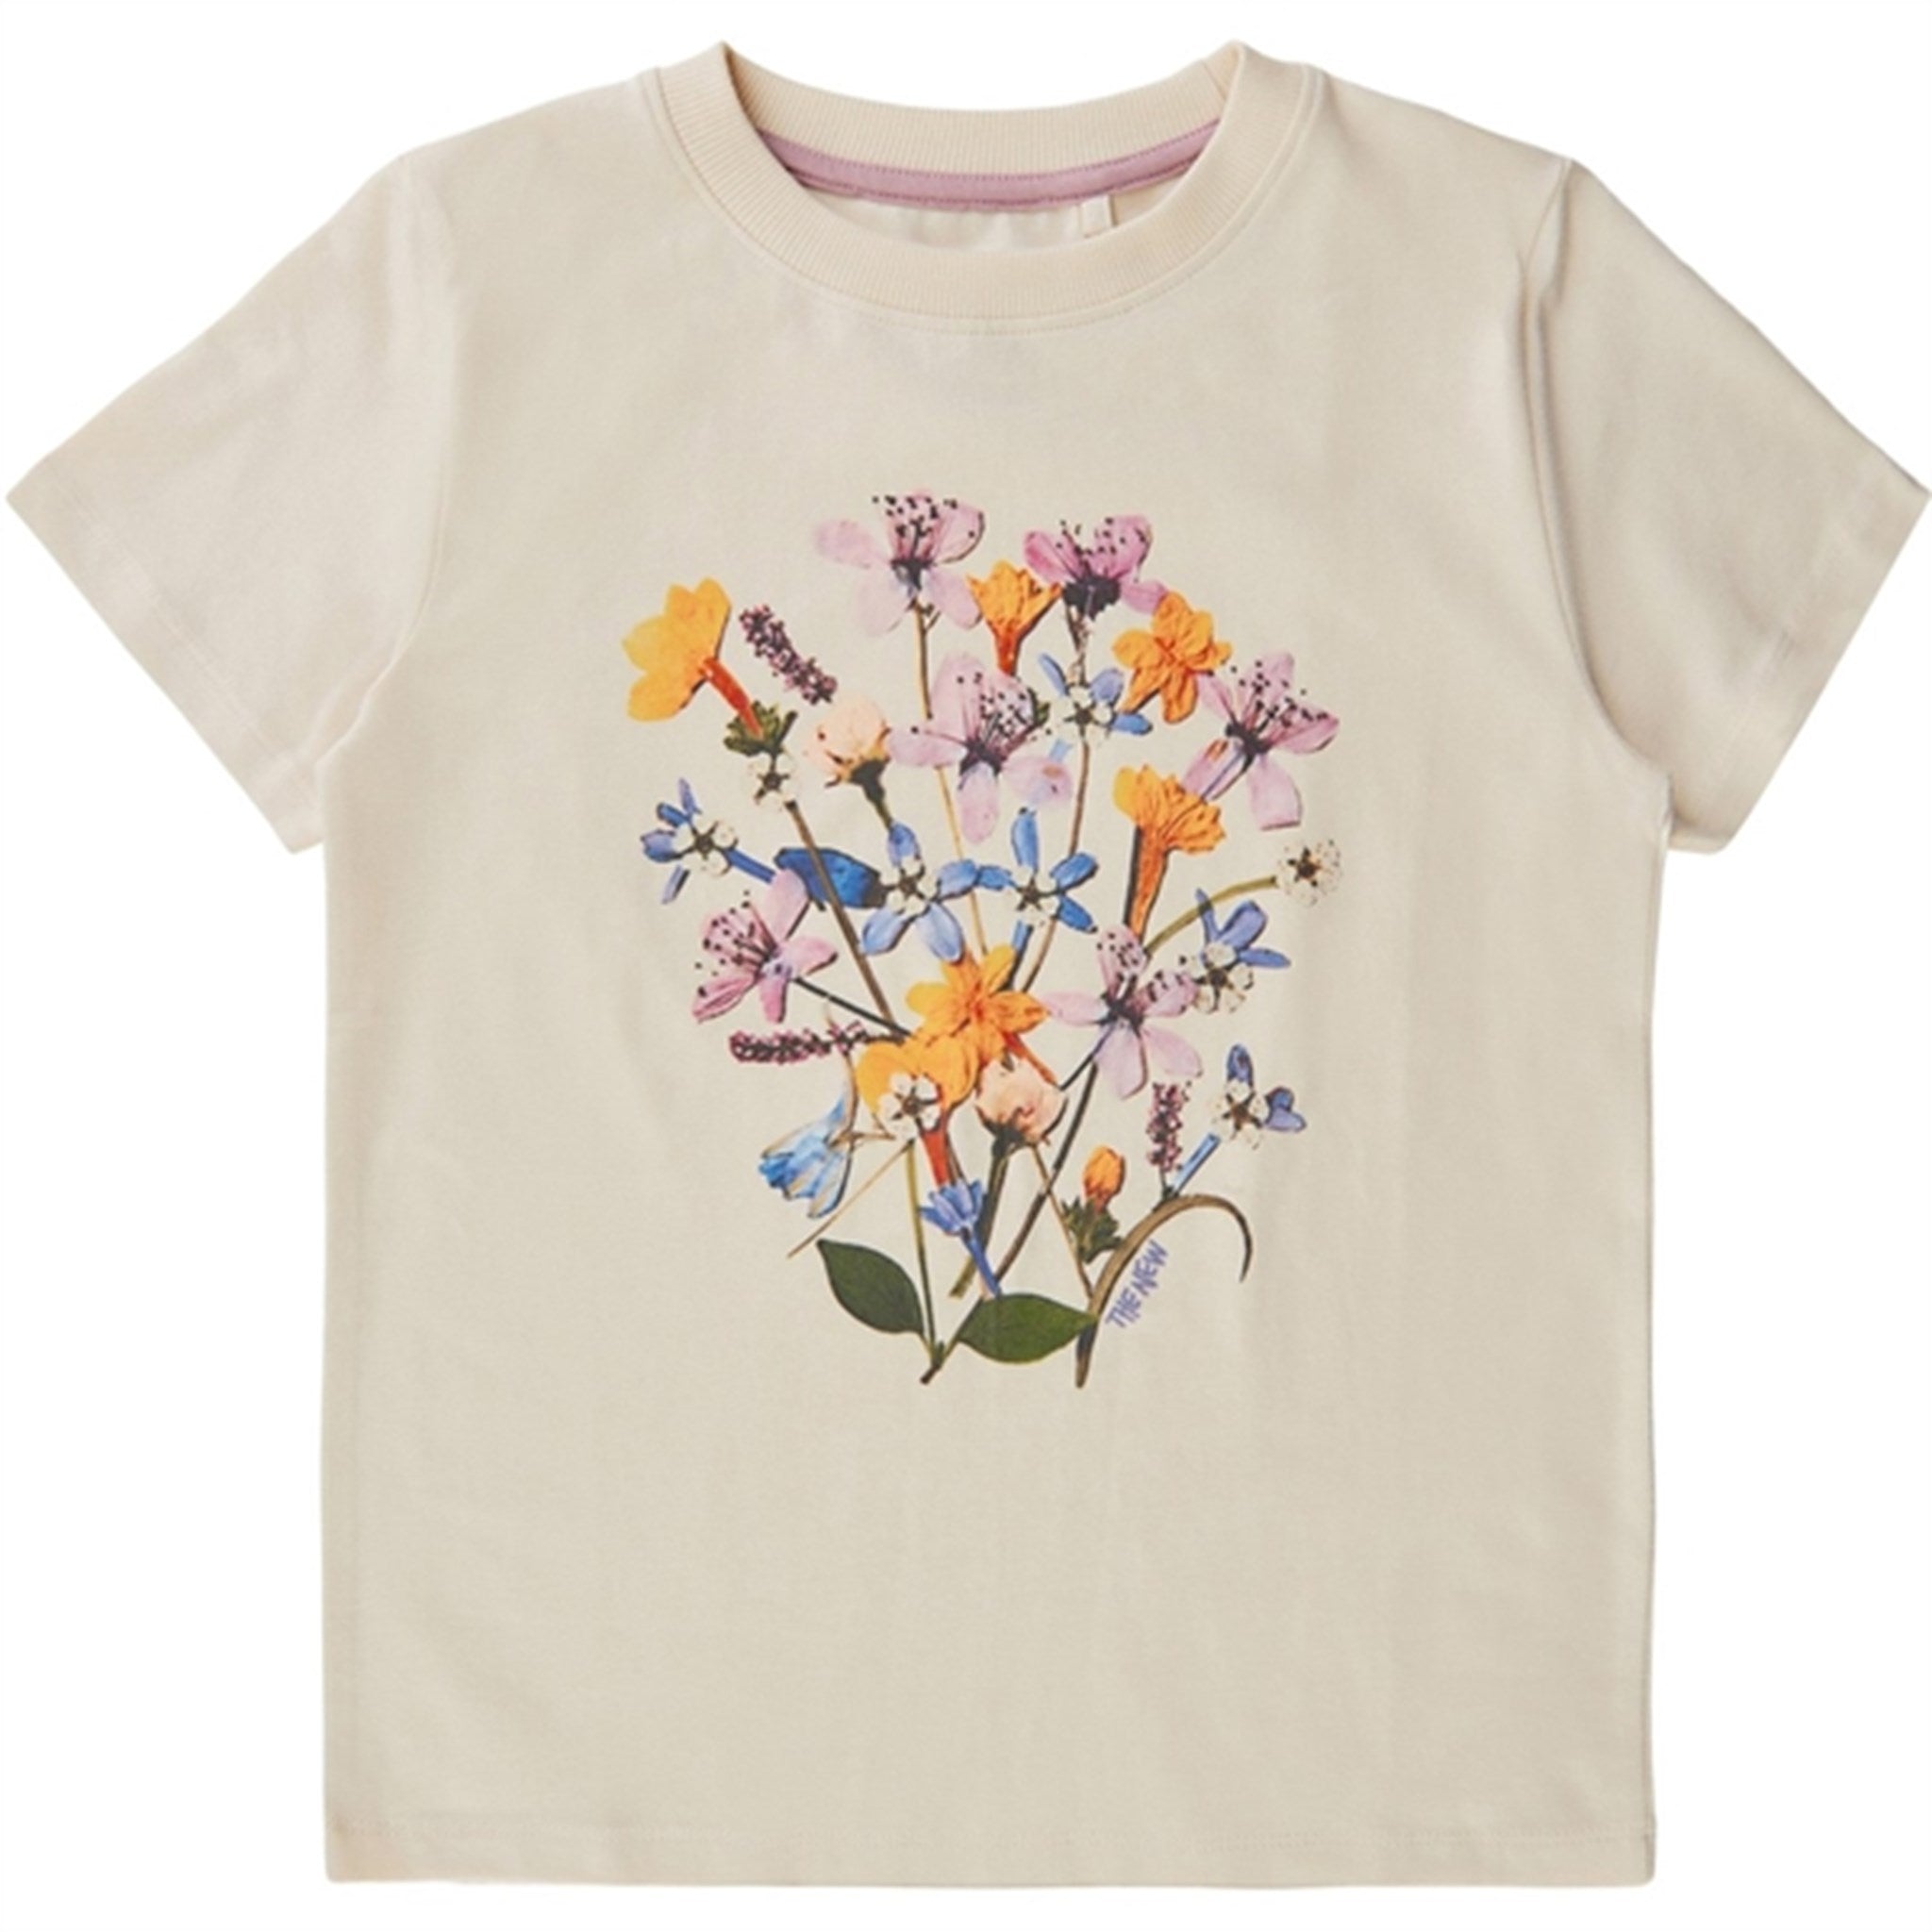 THE NEW White Swan Flower T-shirt